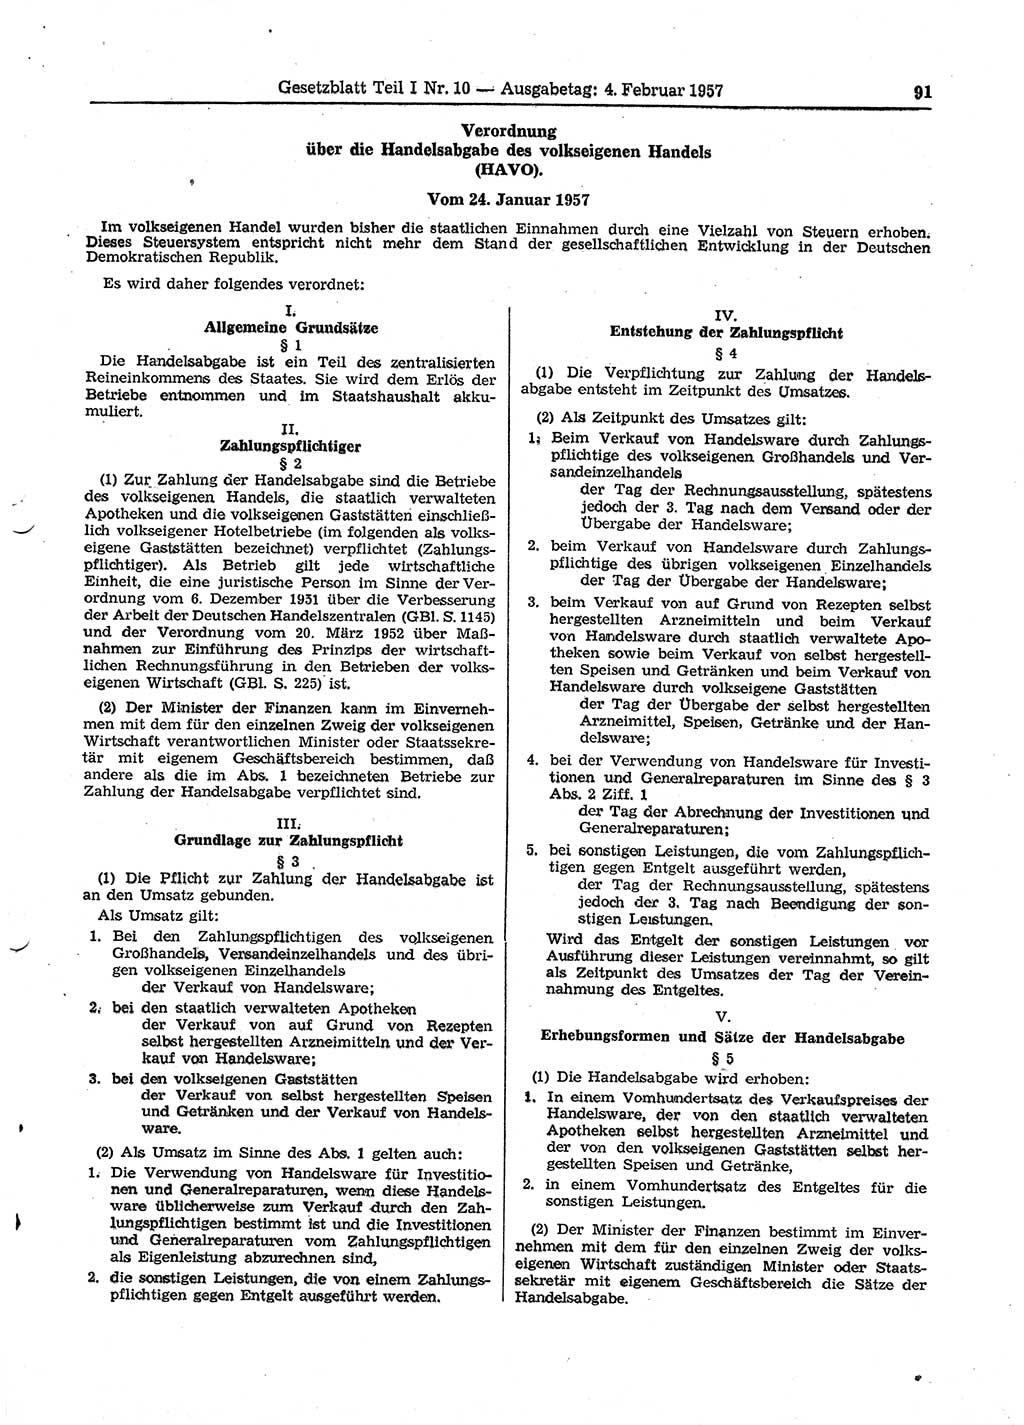 Gesetzblatt (GBl.) der Deutschen Demokratischen Republik (DDR) Teil Ⅰ 1957, Seite 91 (GBl. DDR Ⅰ 1957, S. 91)